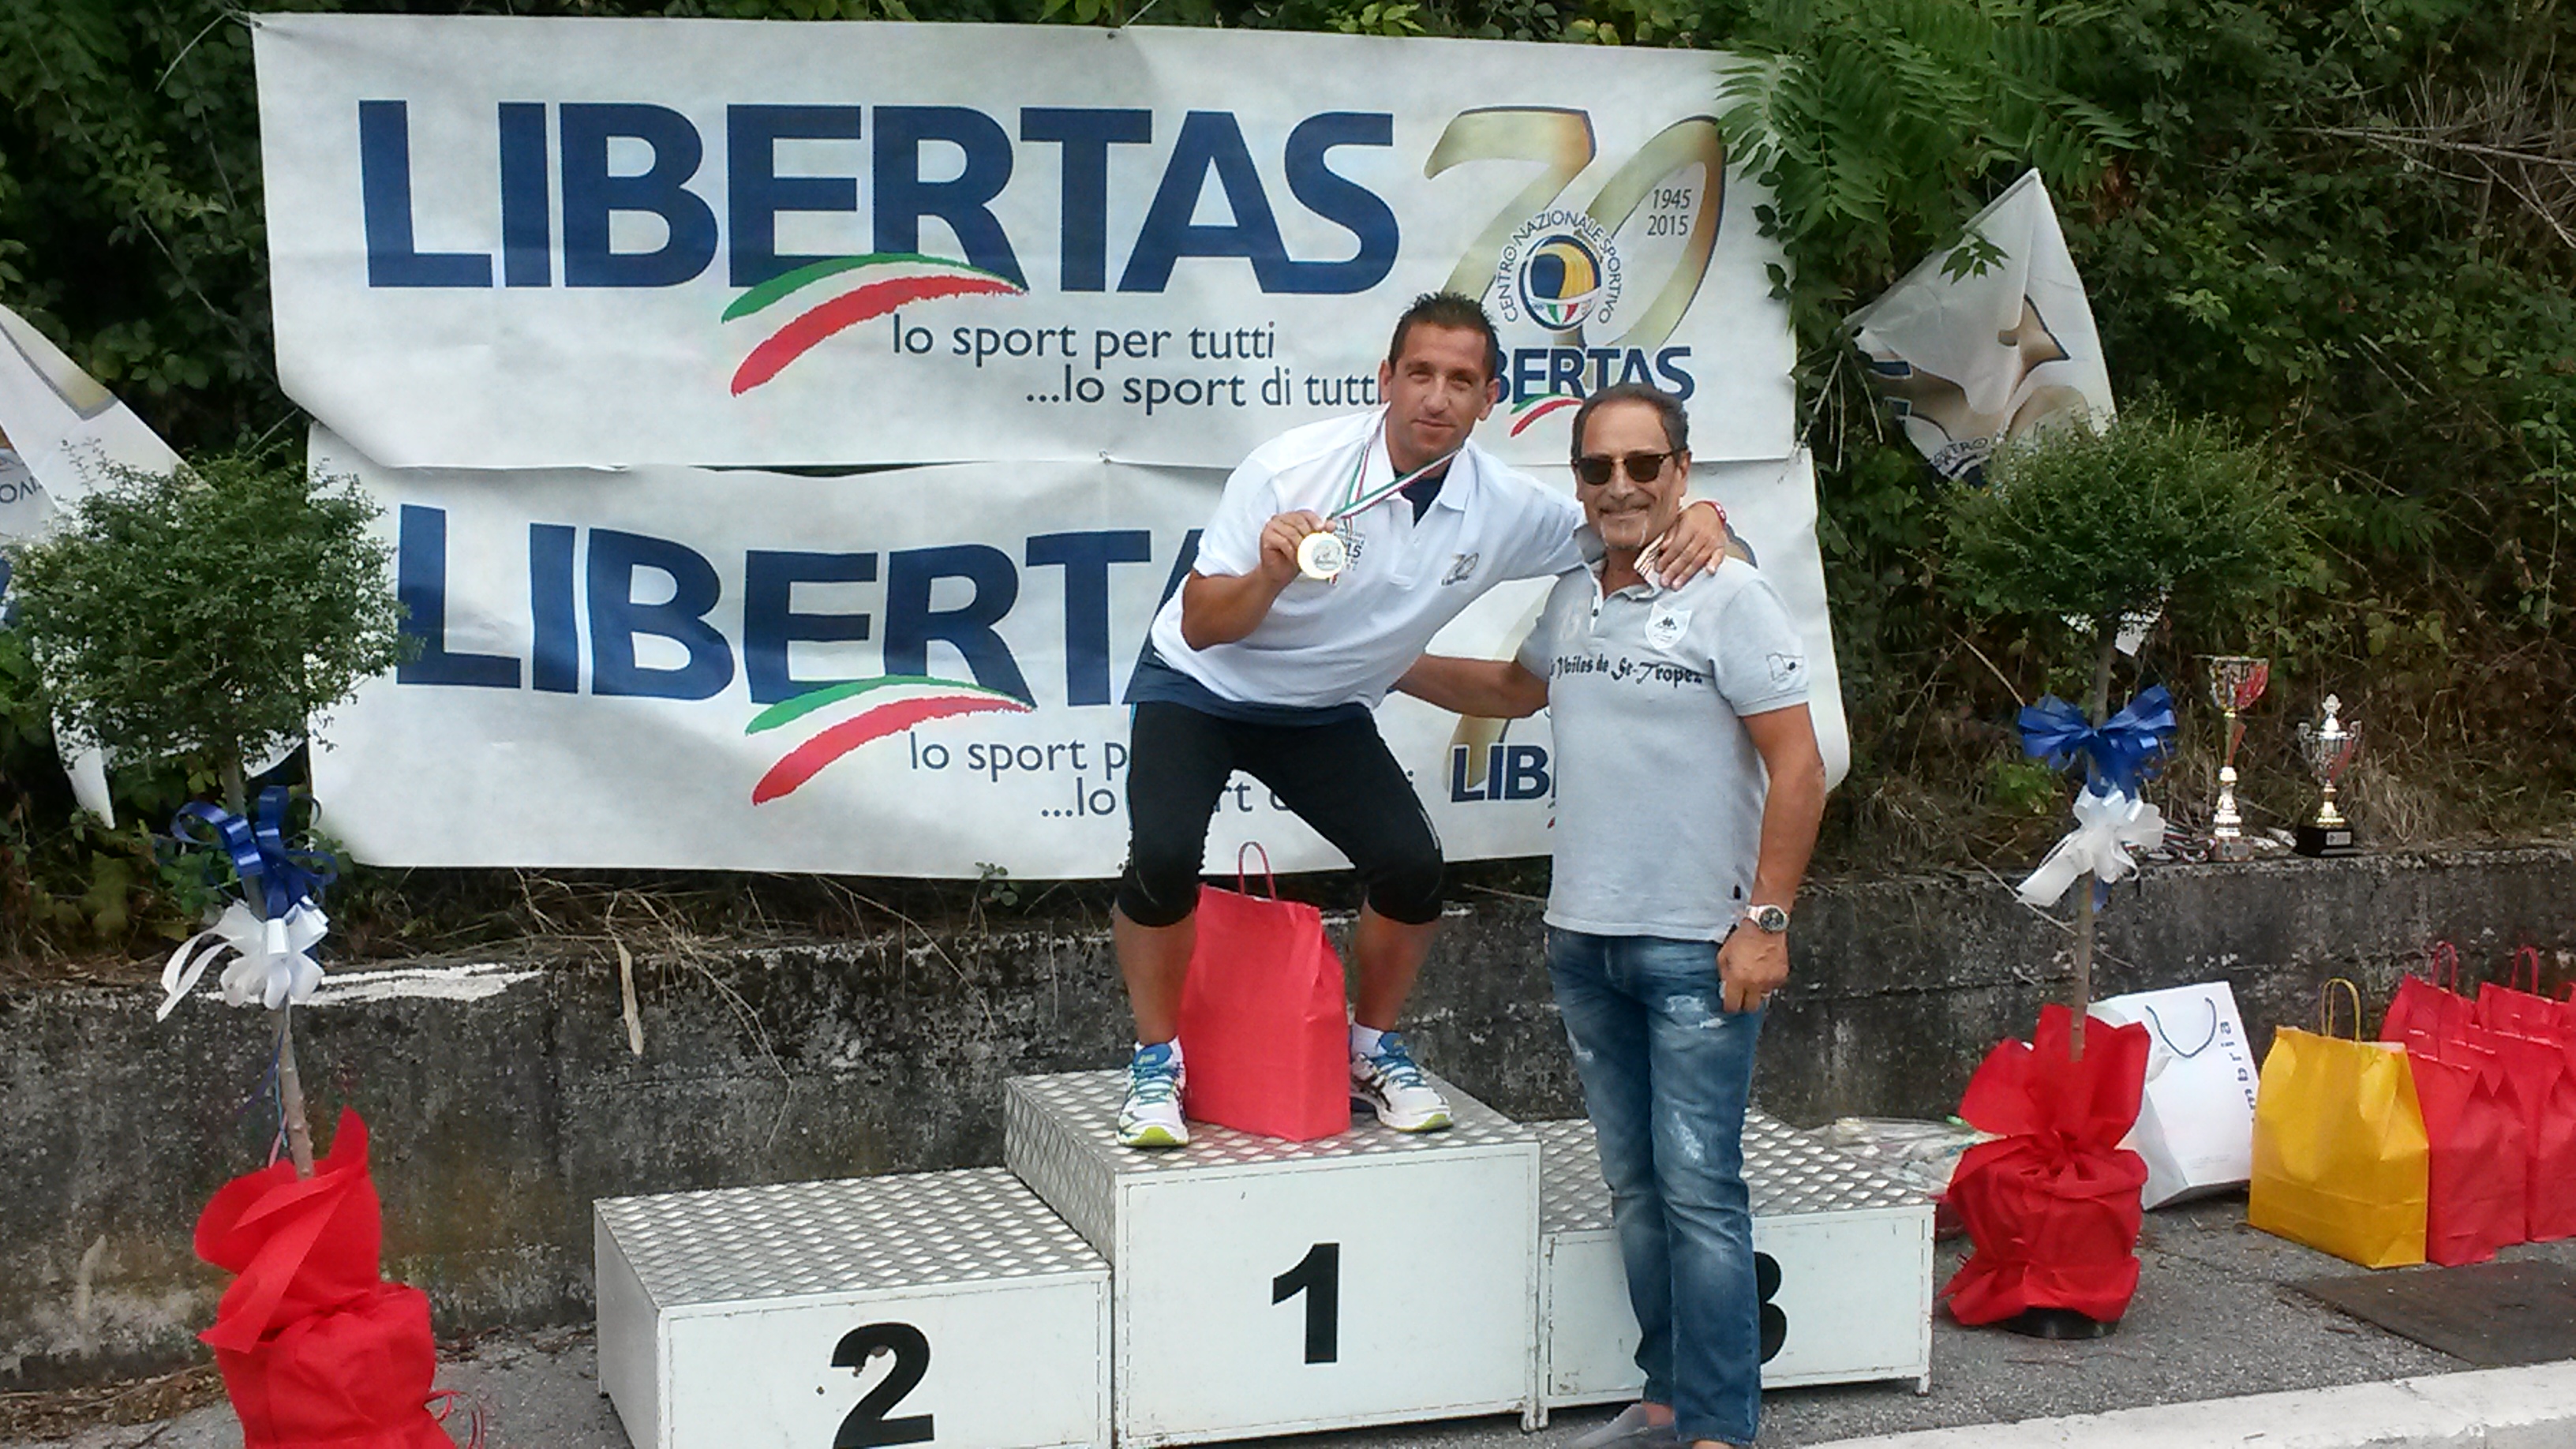 Siragusa oro nella marcia 5 km. ai campionati Libertas